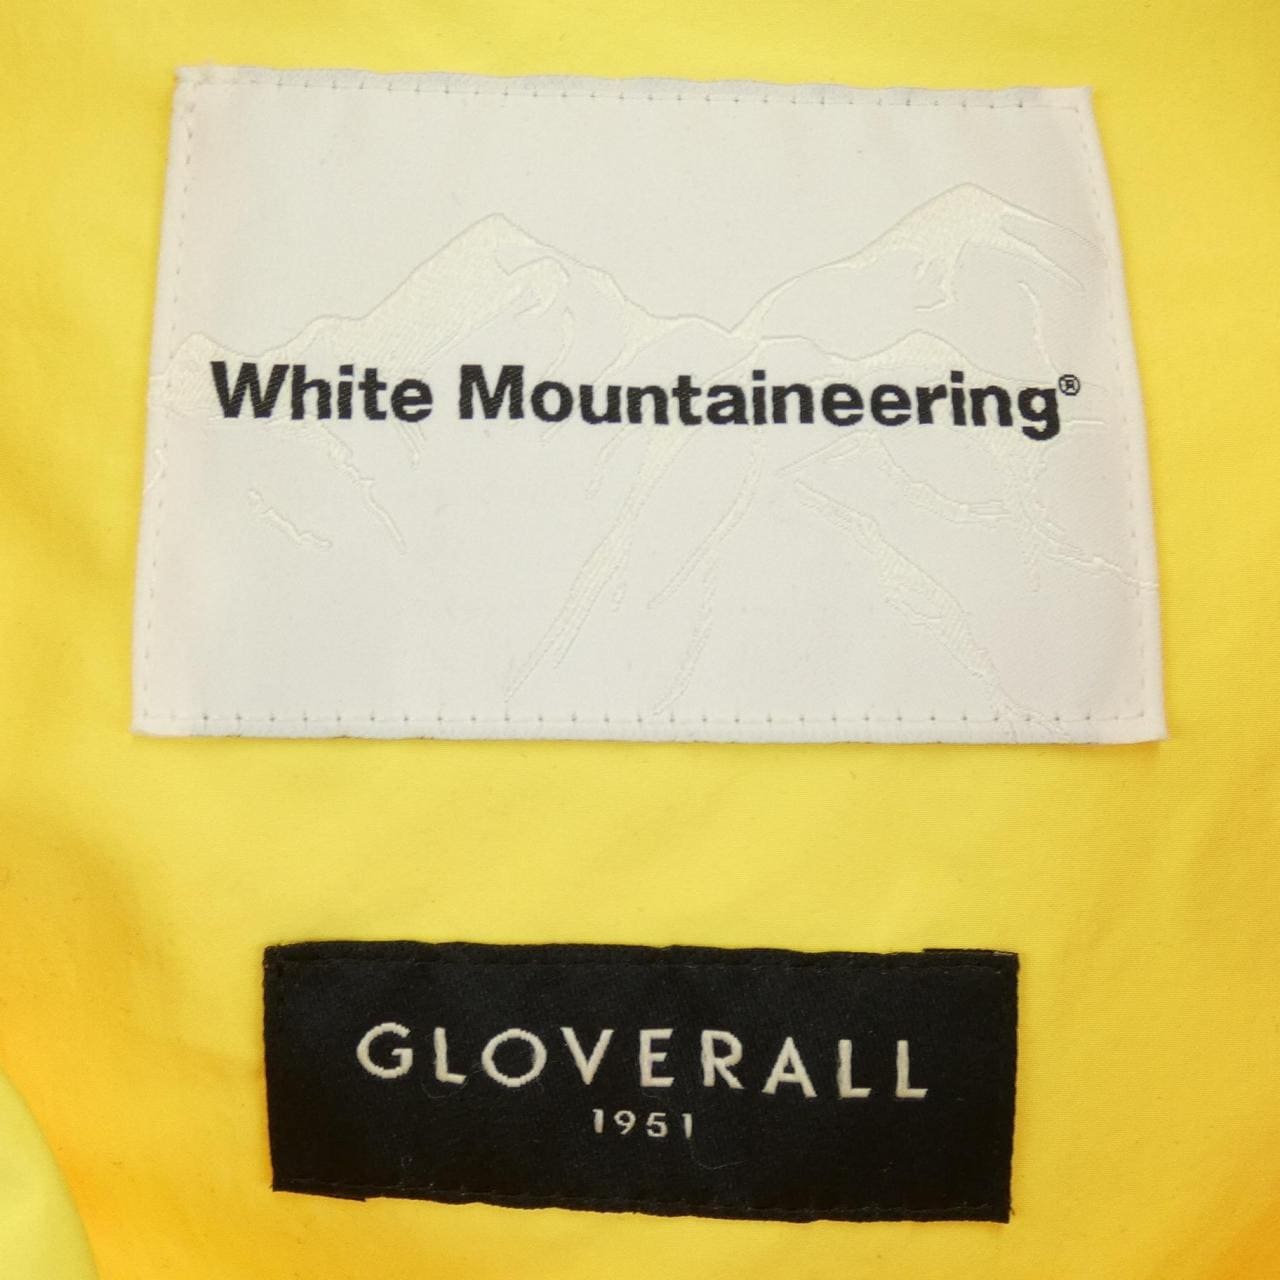 WHITE MOUNTAINEERING coat